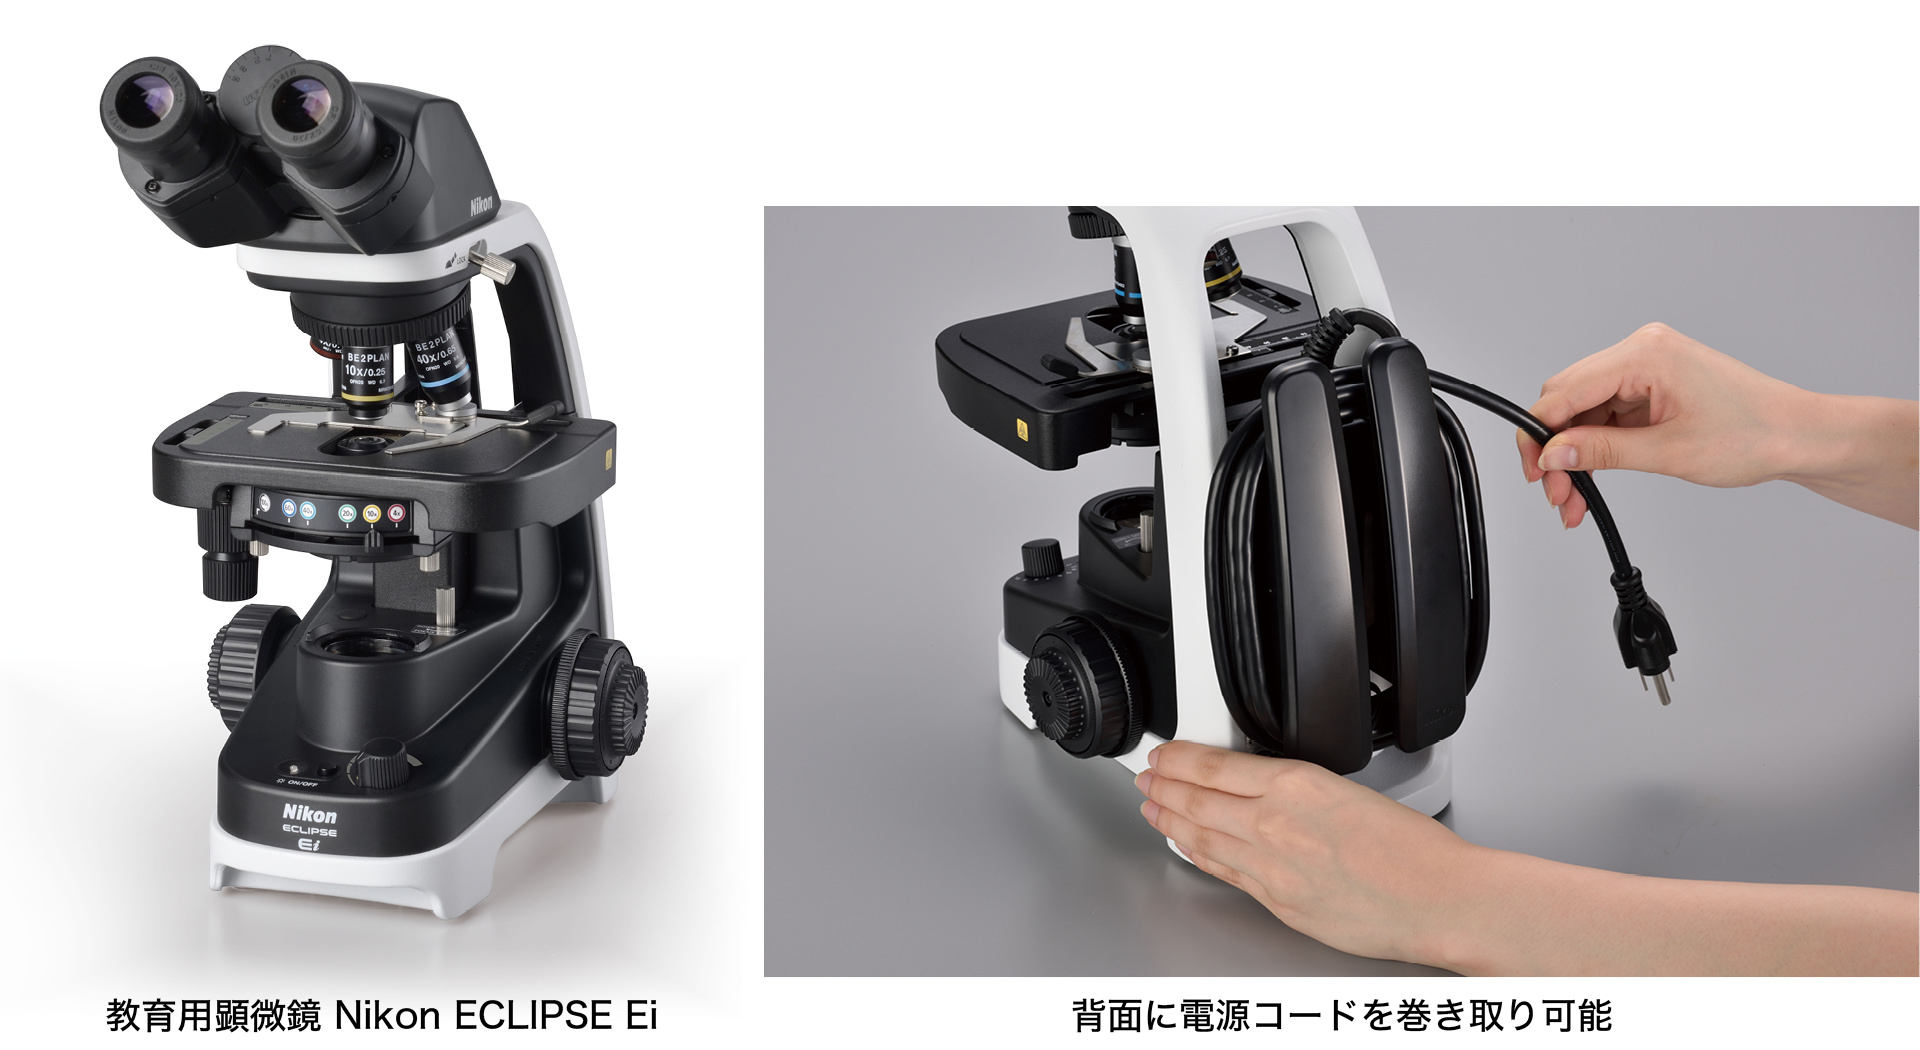 教育用顕微鏡 Nikon ECLIPSE Ei／背面に電源コードを巻き取り可能